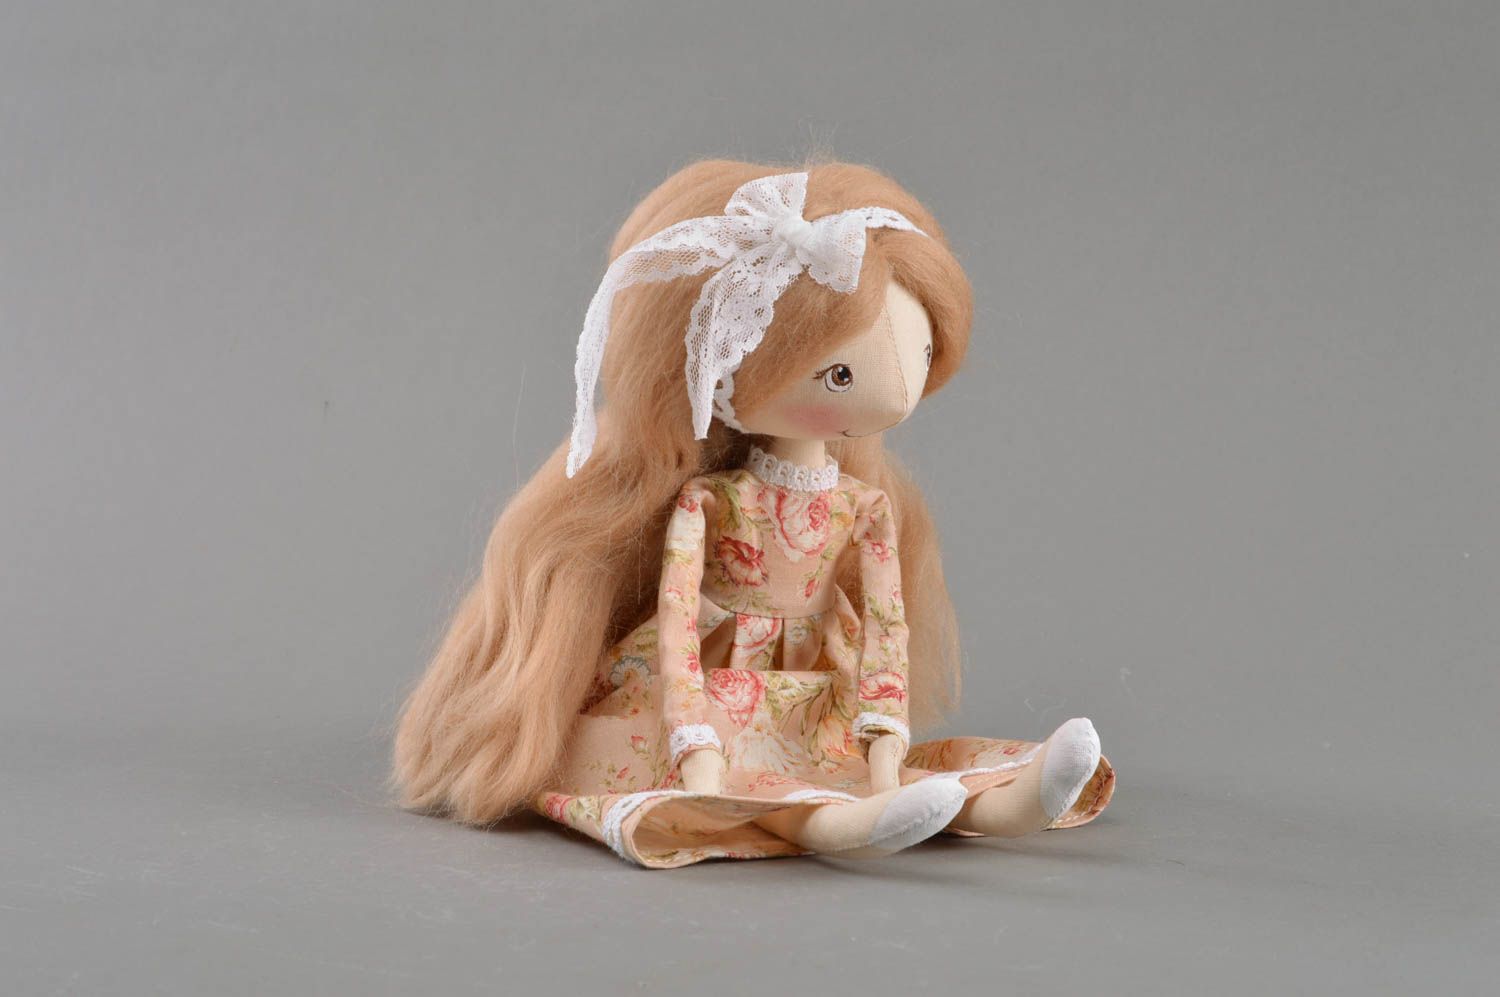 Игрушка кукла из ткани в платье с цветочным принтом на подставке ручная работа фото 5